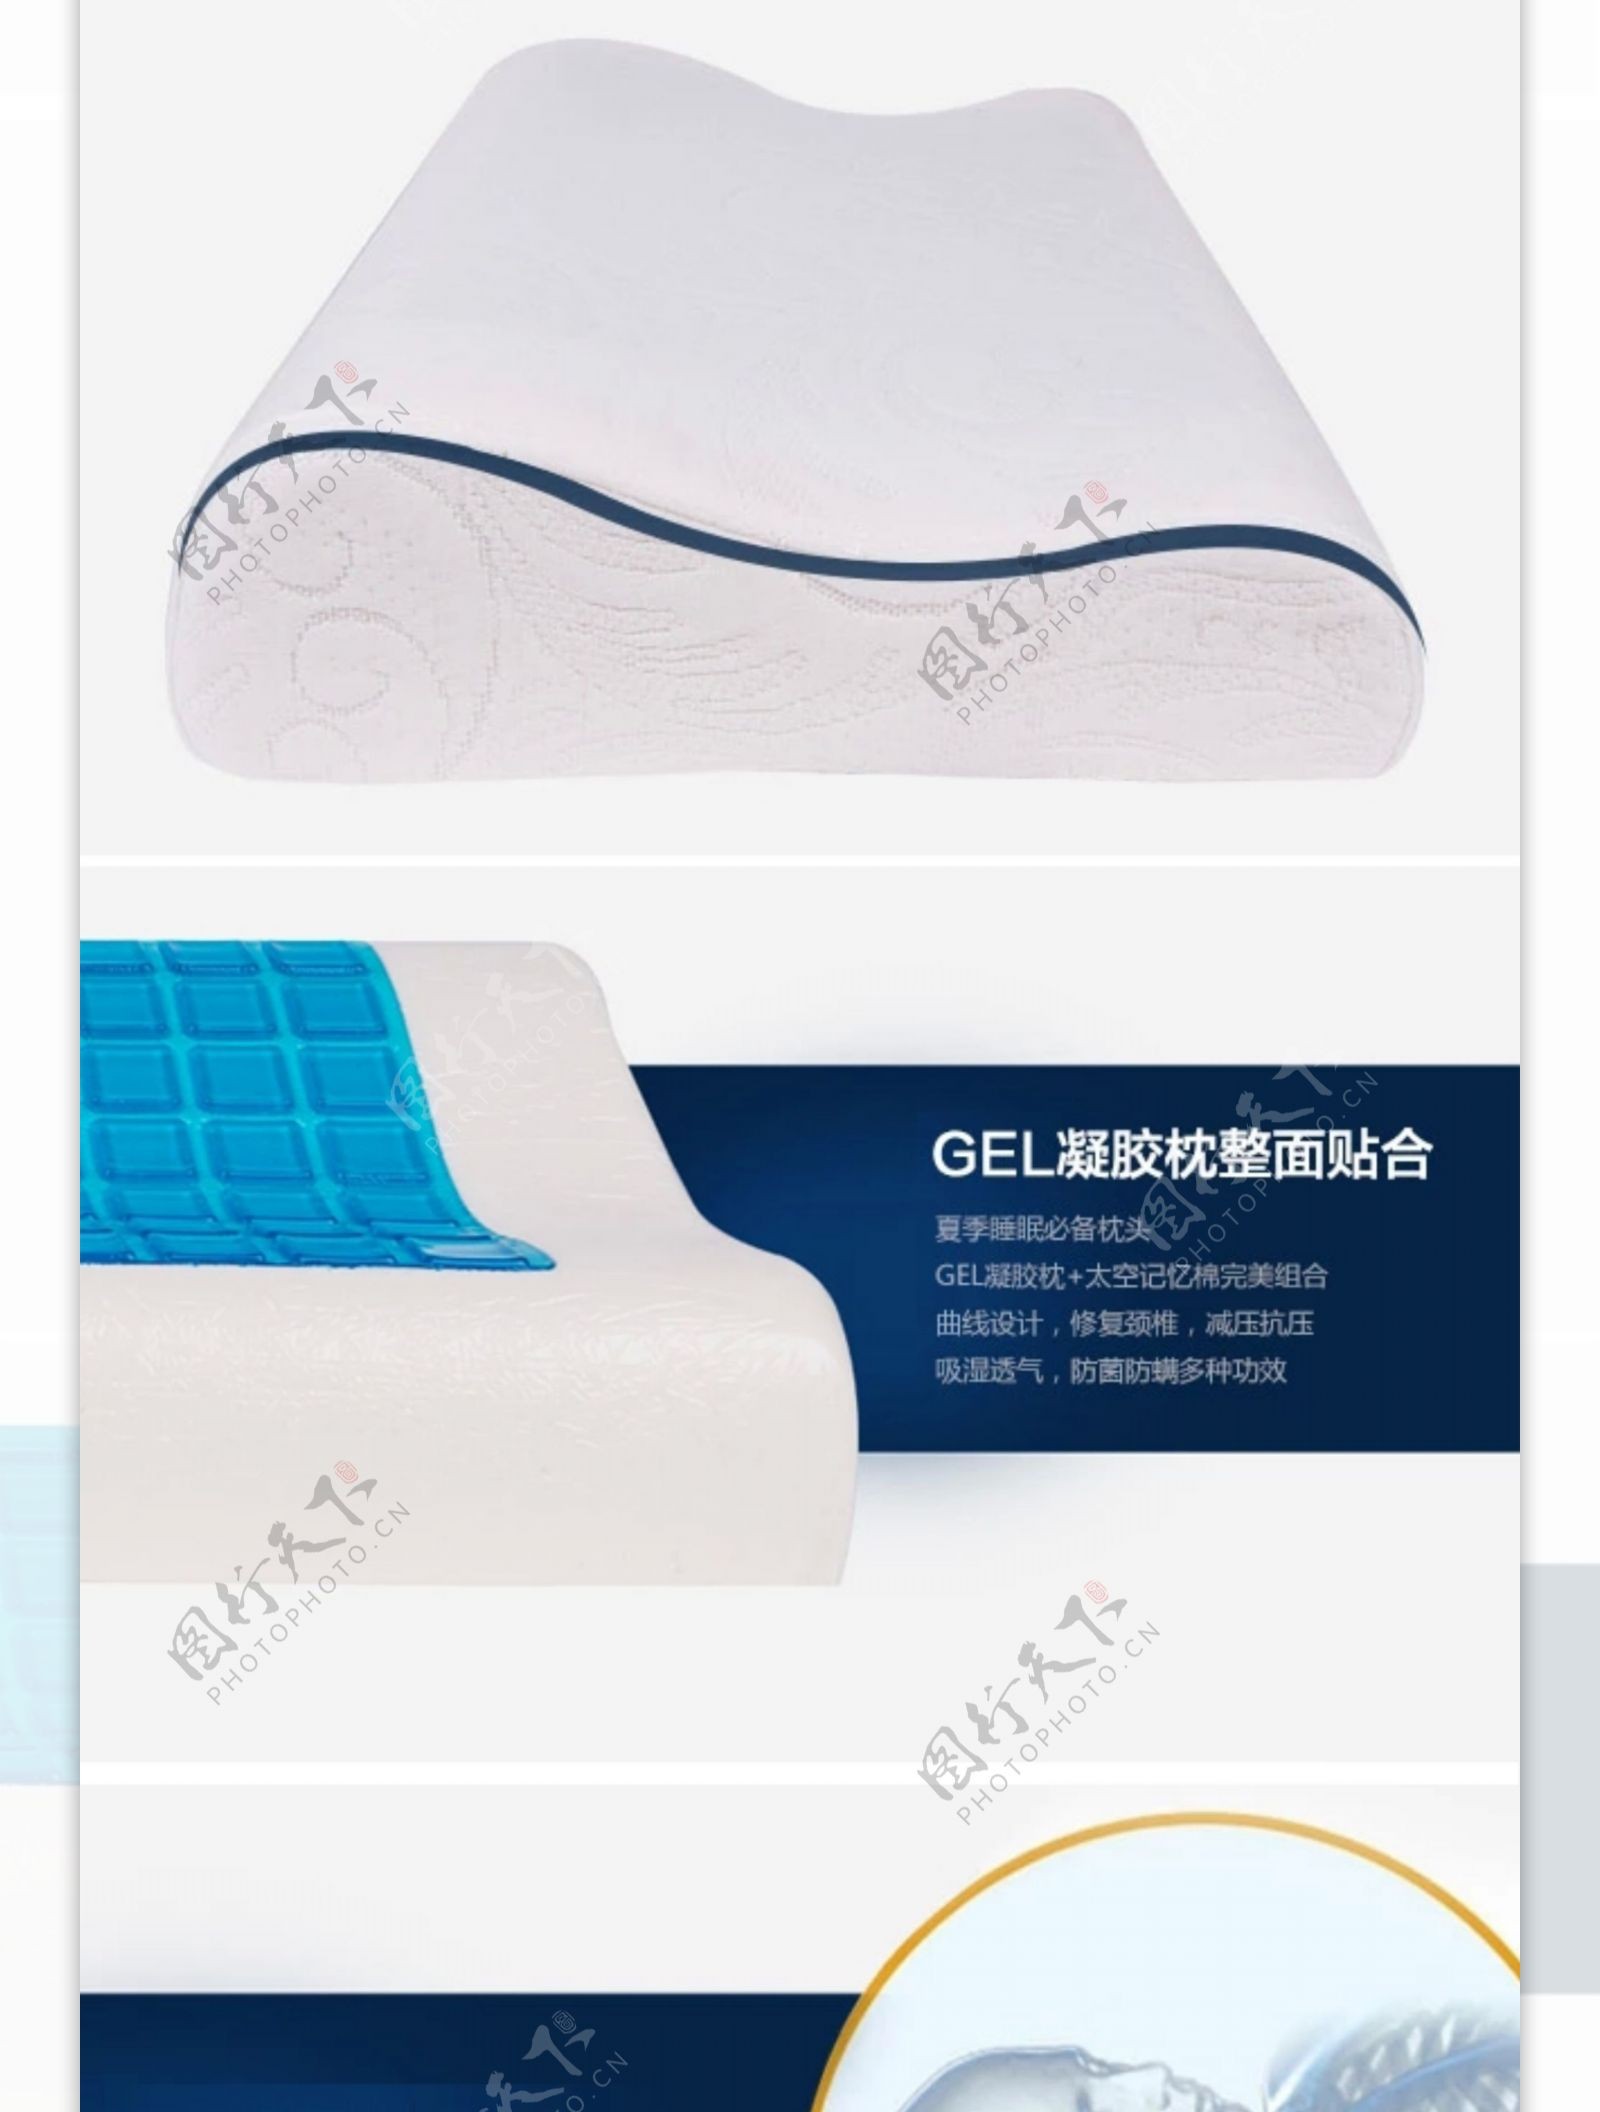 水凝胶枕头产品详情页设计